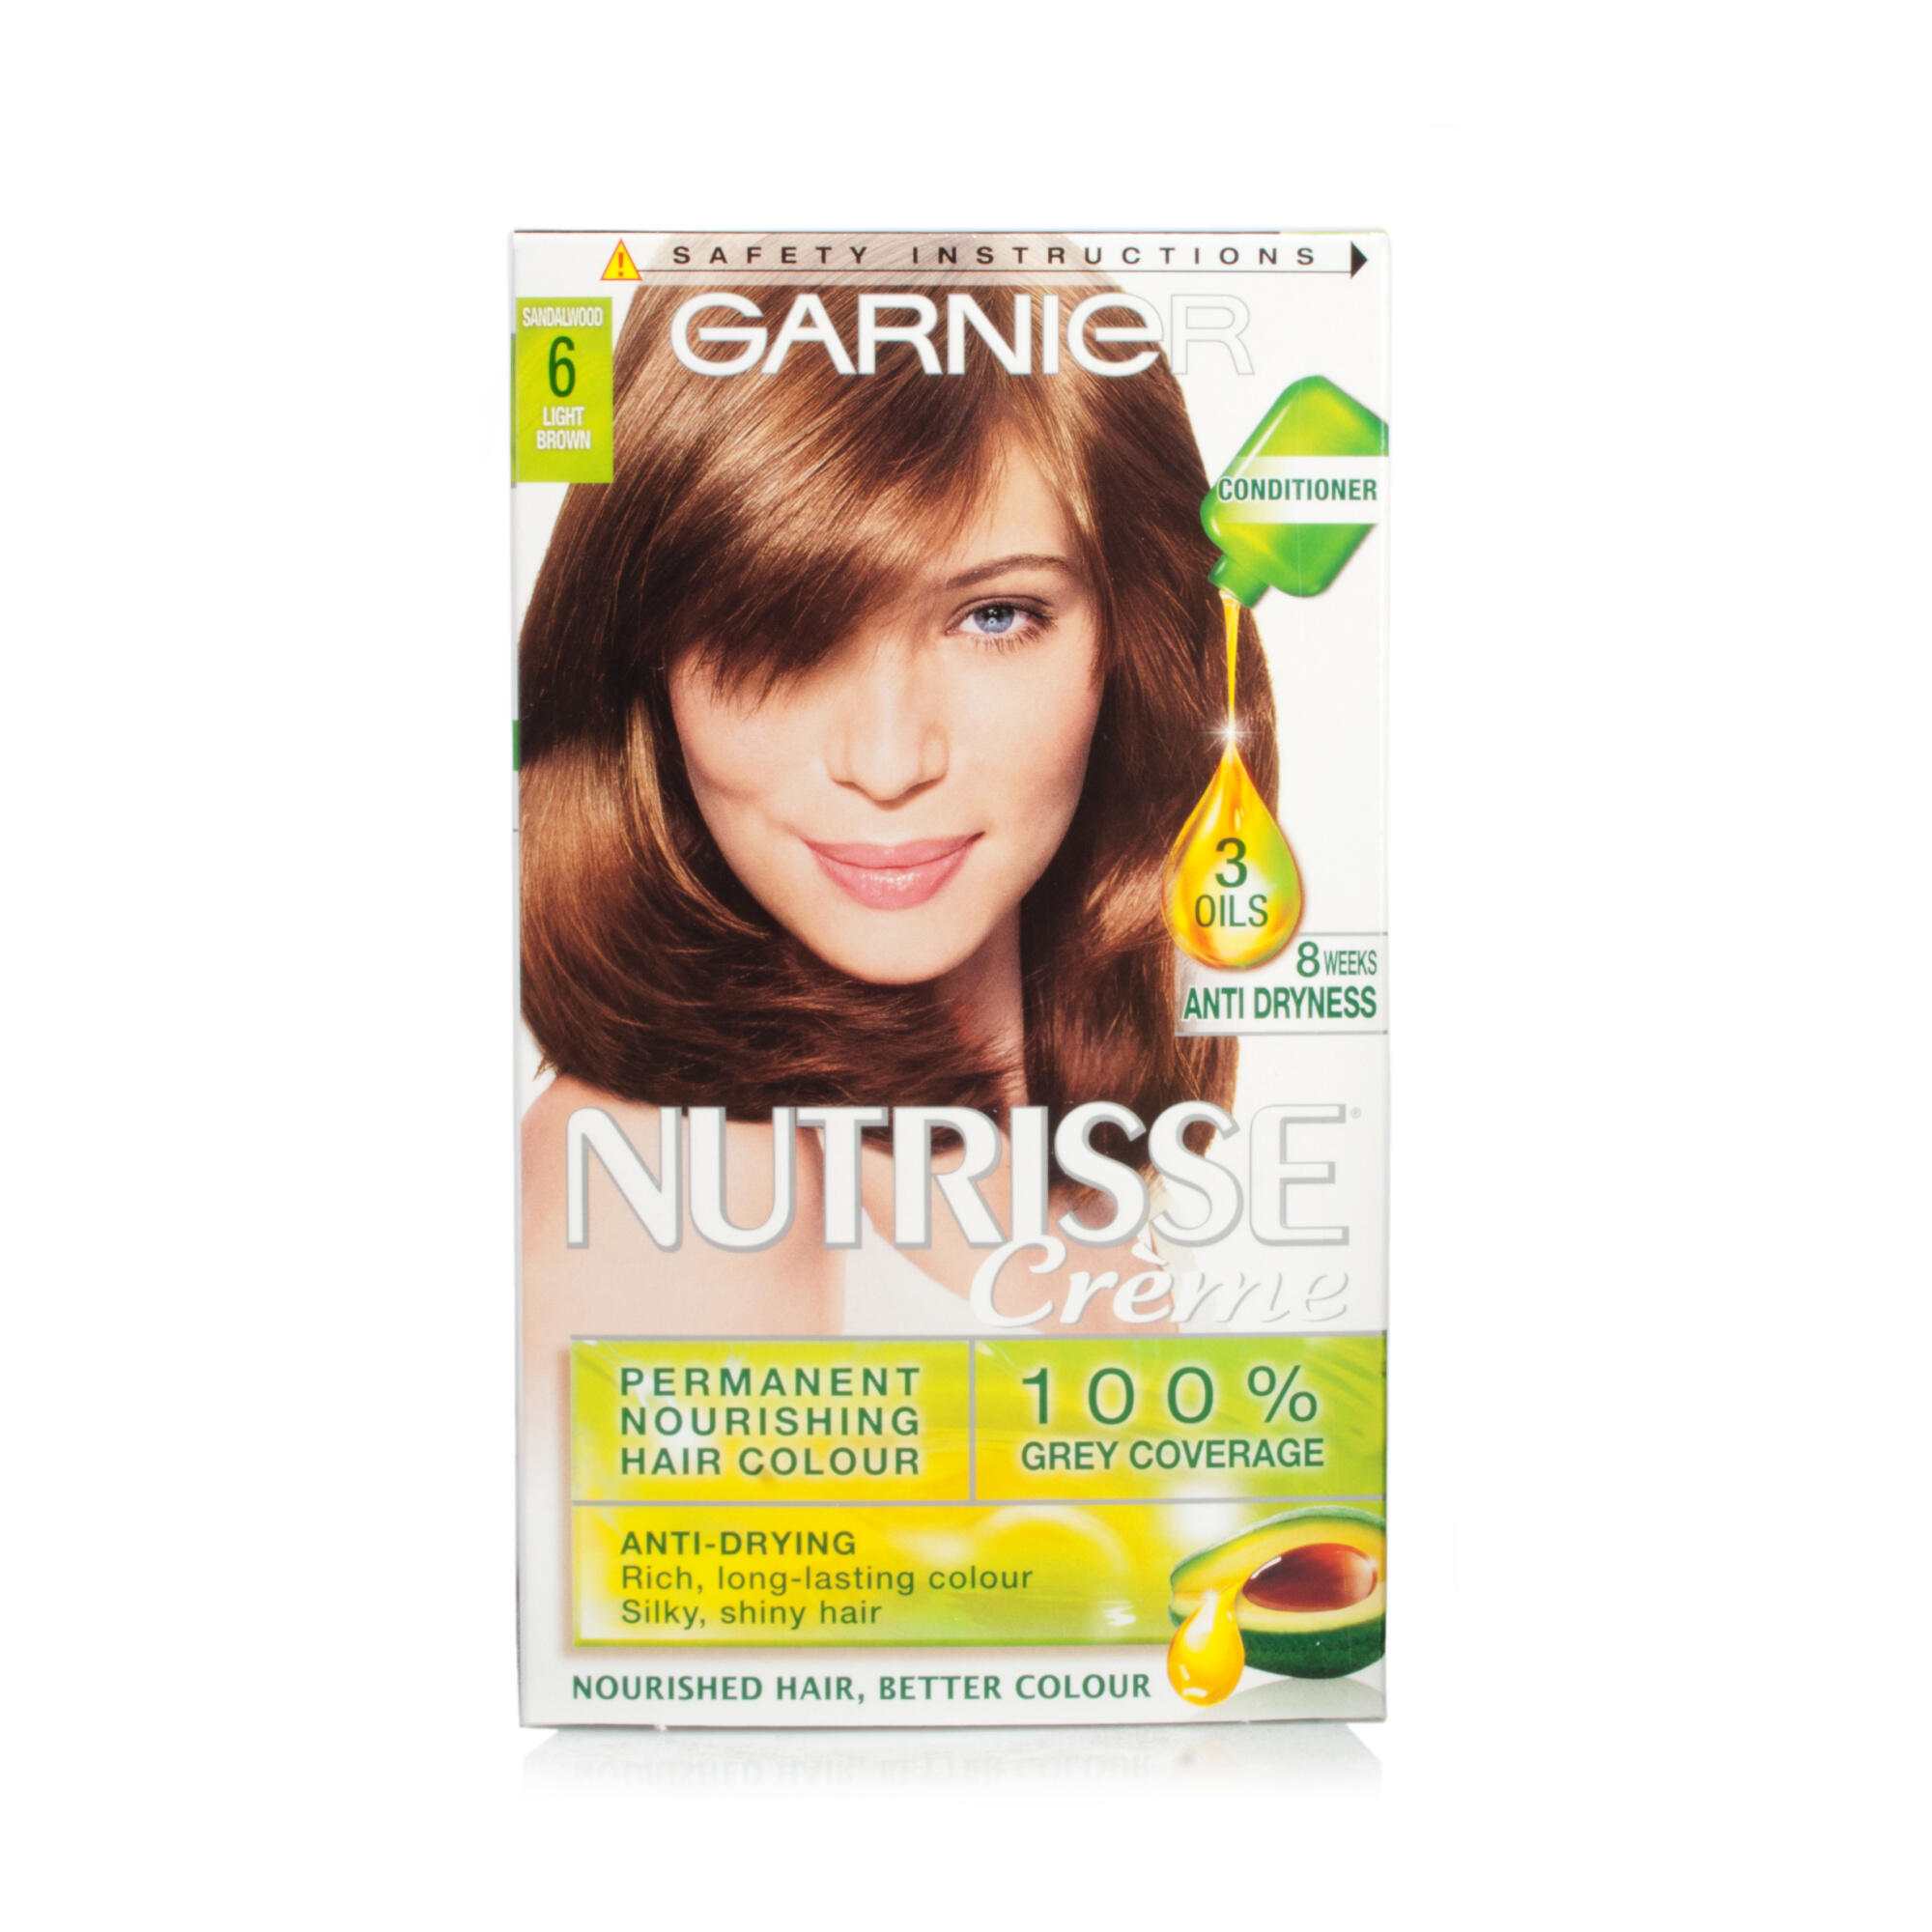 Garnier Nutrisse Creme Light Brown 6 | Chemist Direct